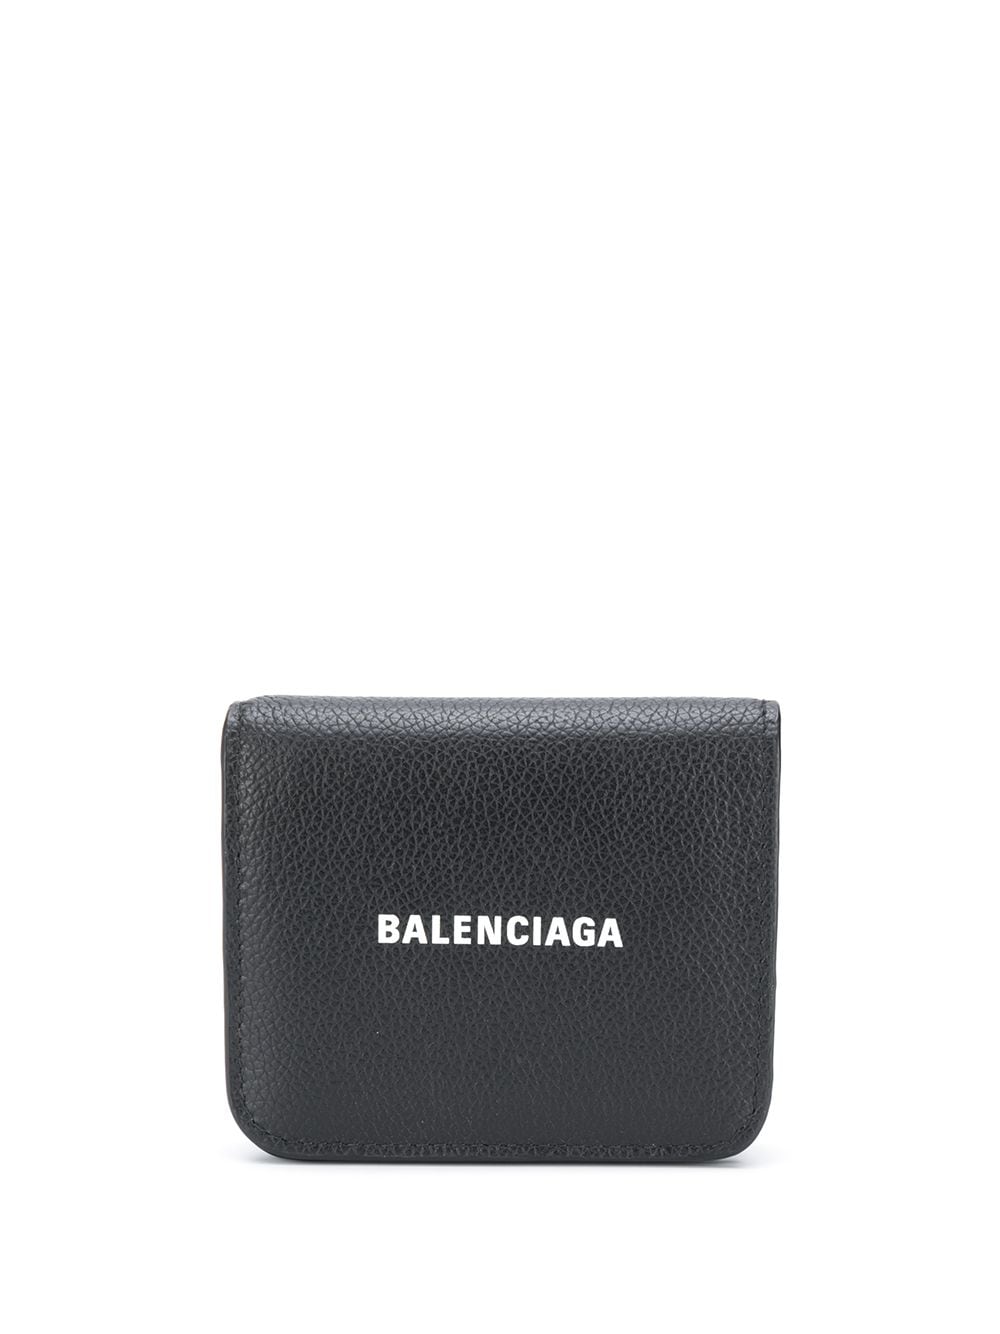 фото Balenciaga кошелек cash с откидным клапаном